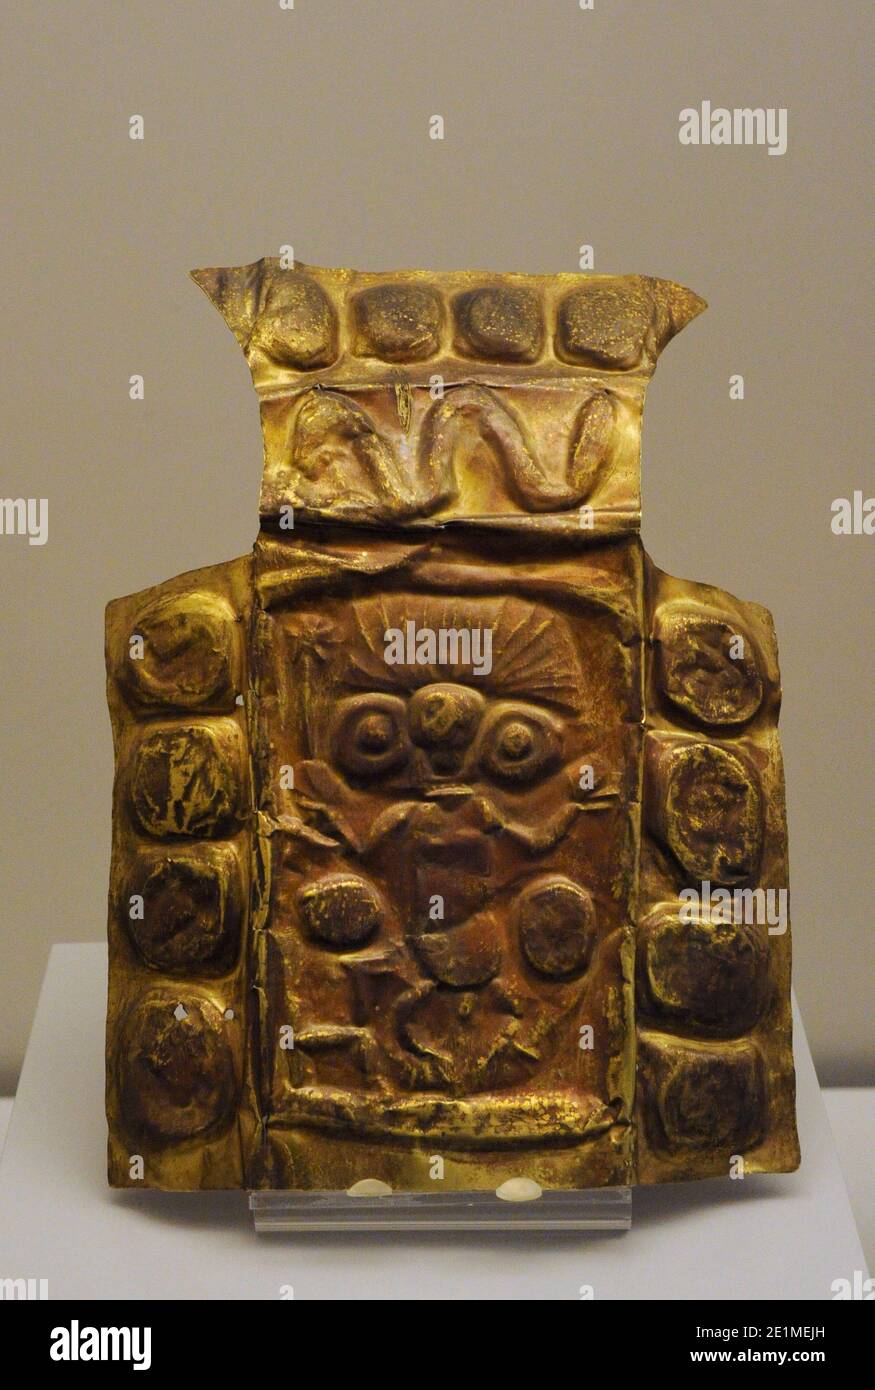 Piastra in rilievo. Oro. Civiltà Inca (1400-1533 d.C.). Cuzco. Perù. Museo delle Americhe. Madrid, Spagna. Foto Stock